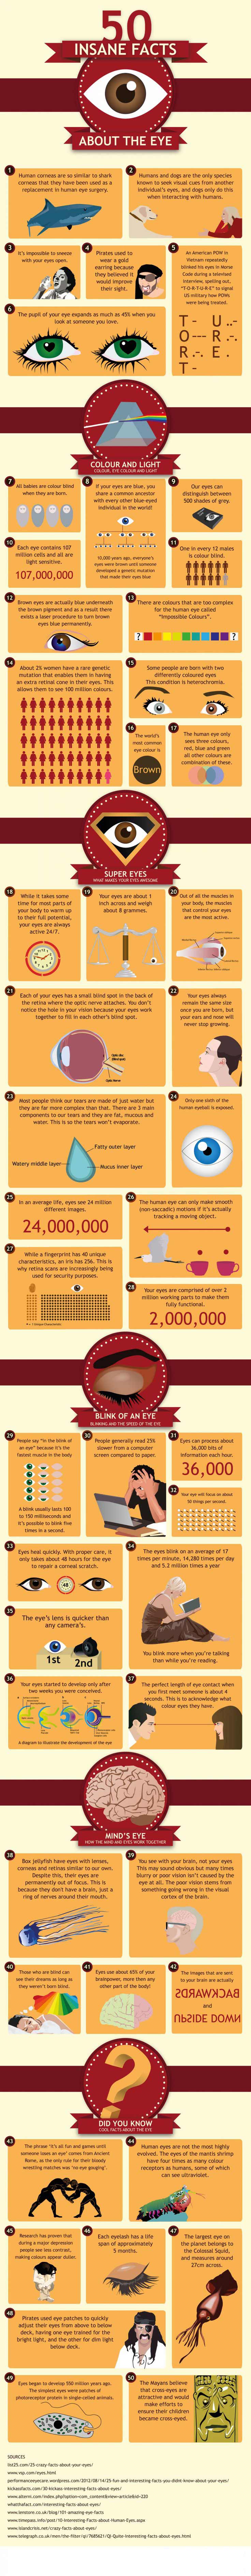 Amazing-Eye-Facts